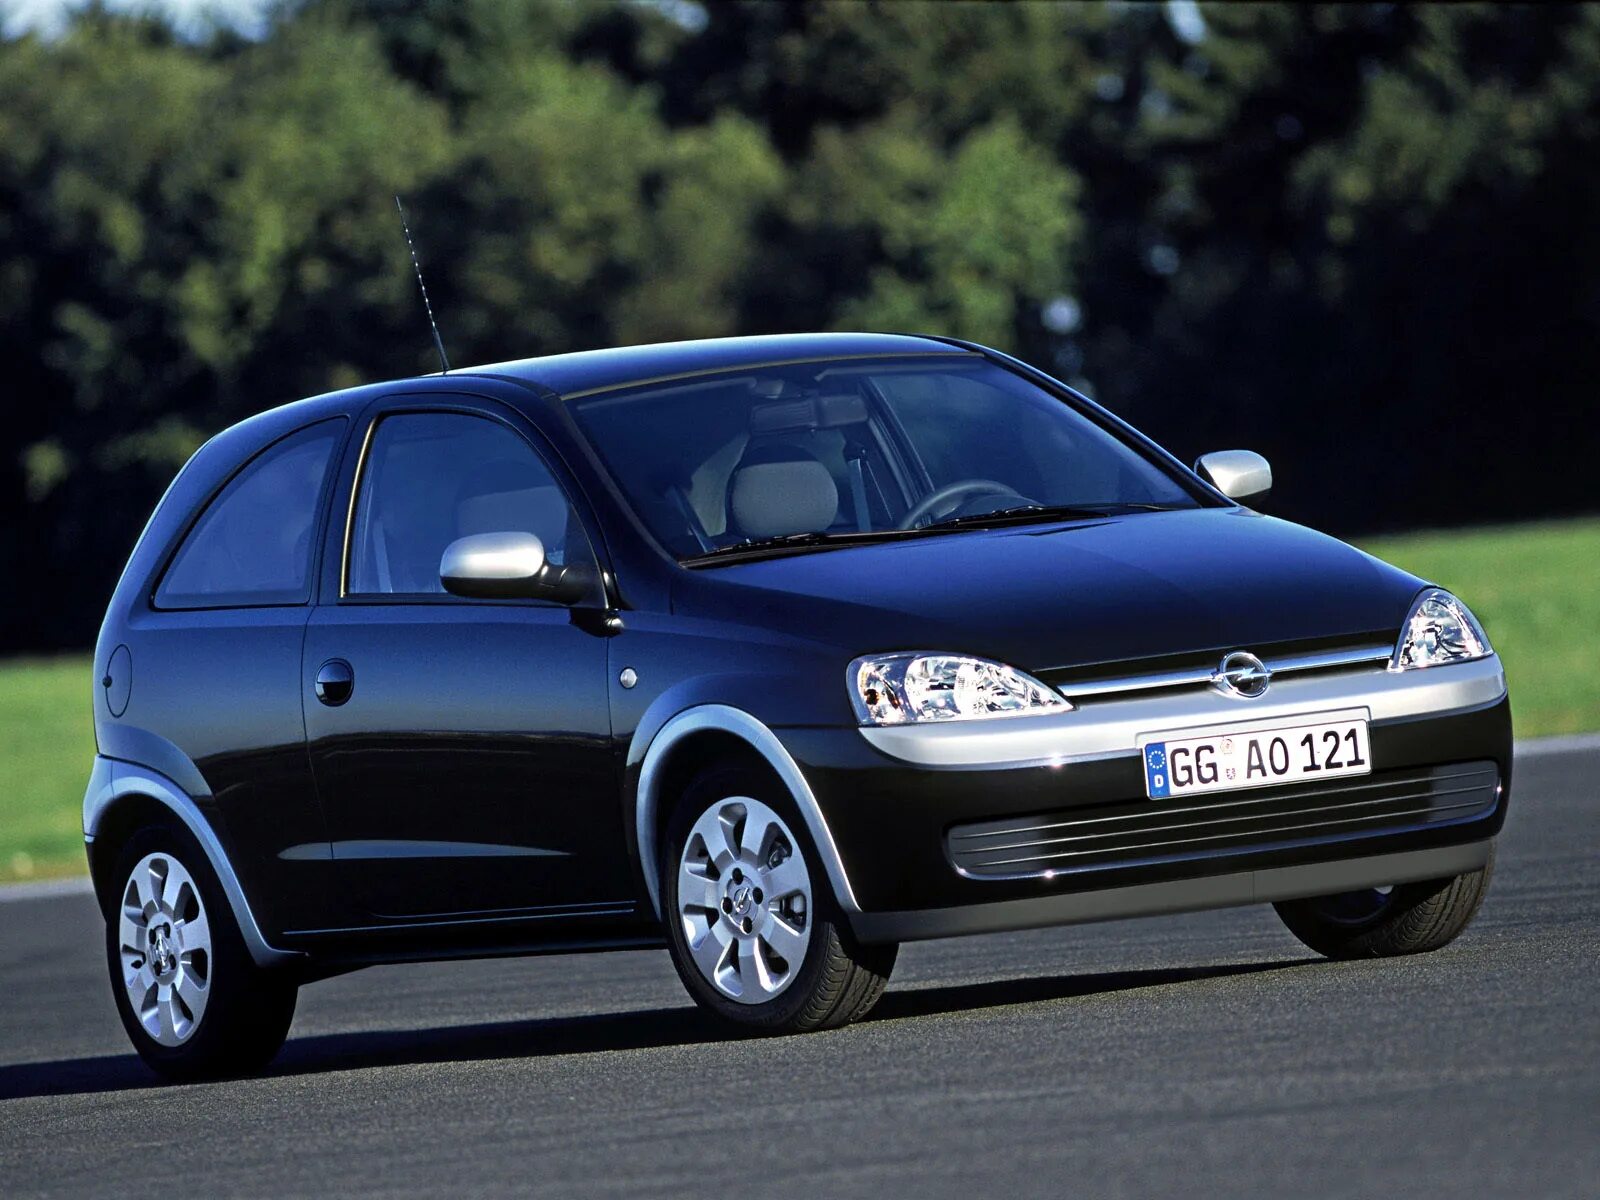 Opel Corsa c 2003. Опель Корса 2000-2003. Opel Corsa c 2000. Opel corsa 2003